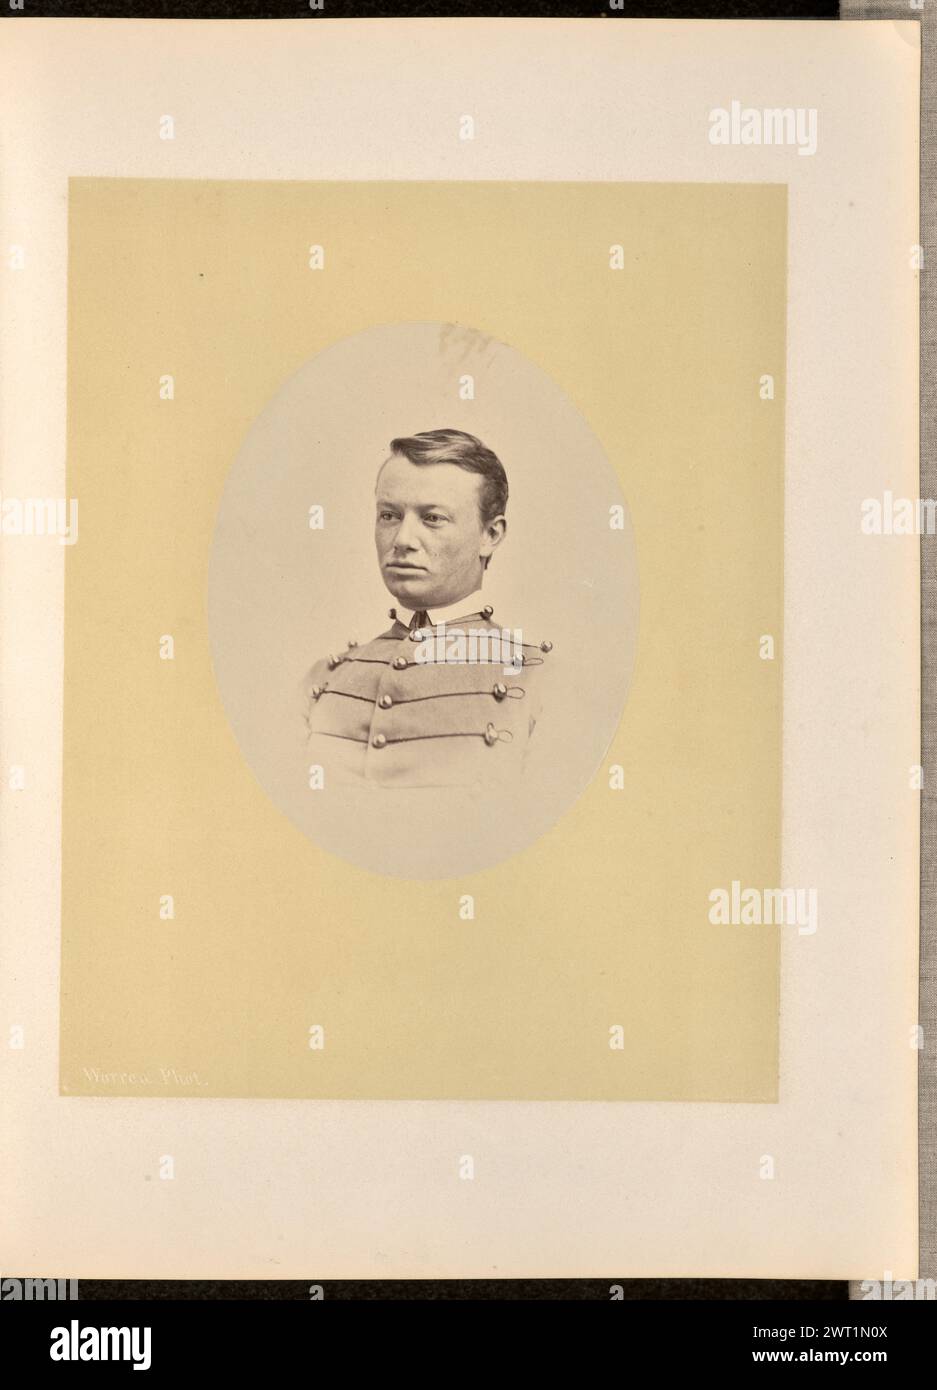 Portrait d'un homme. George Kendall Warren, photographe (américain, 1834 - 1884) 1868 Portrait de profil d'un homme vêtu d'un uniforme de cadet. Il fait face à la zone gauche de l'image. Banque D'Images